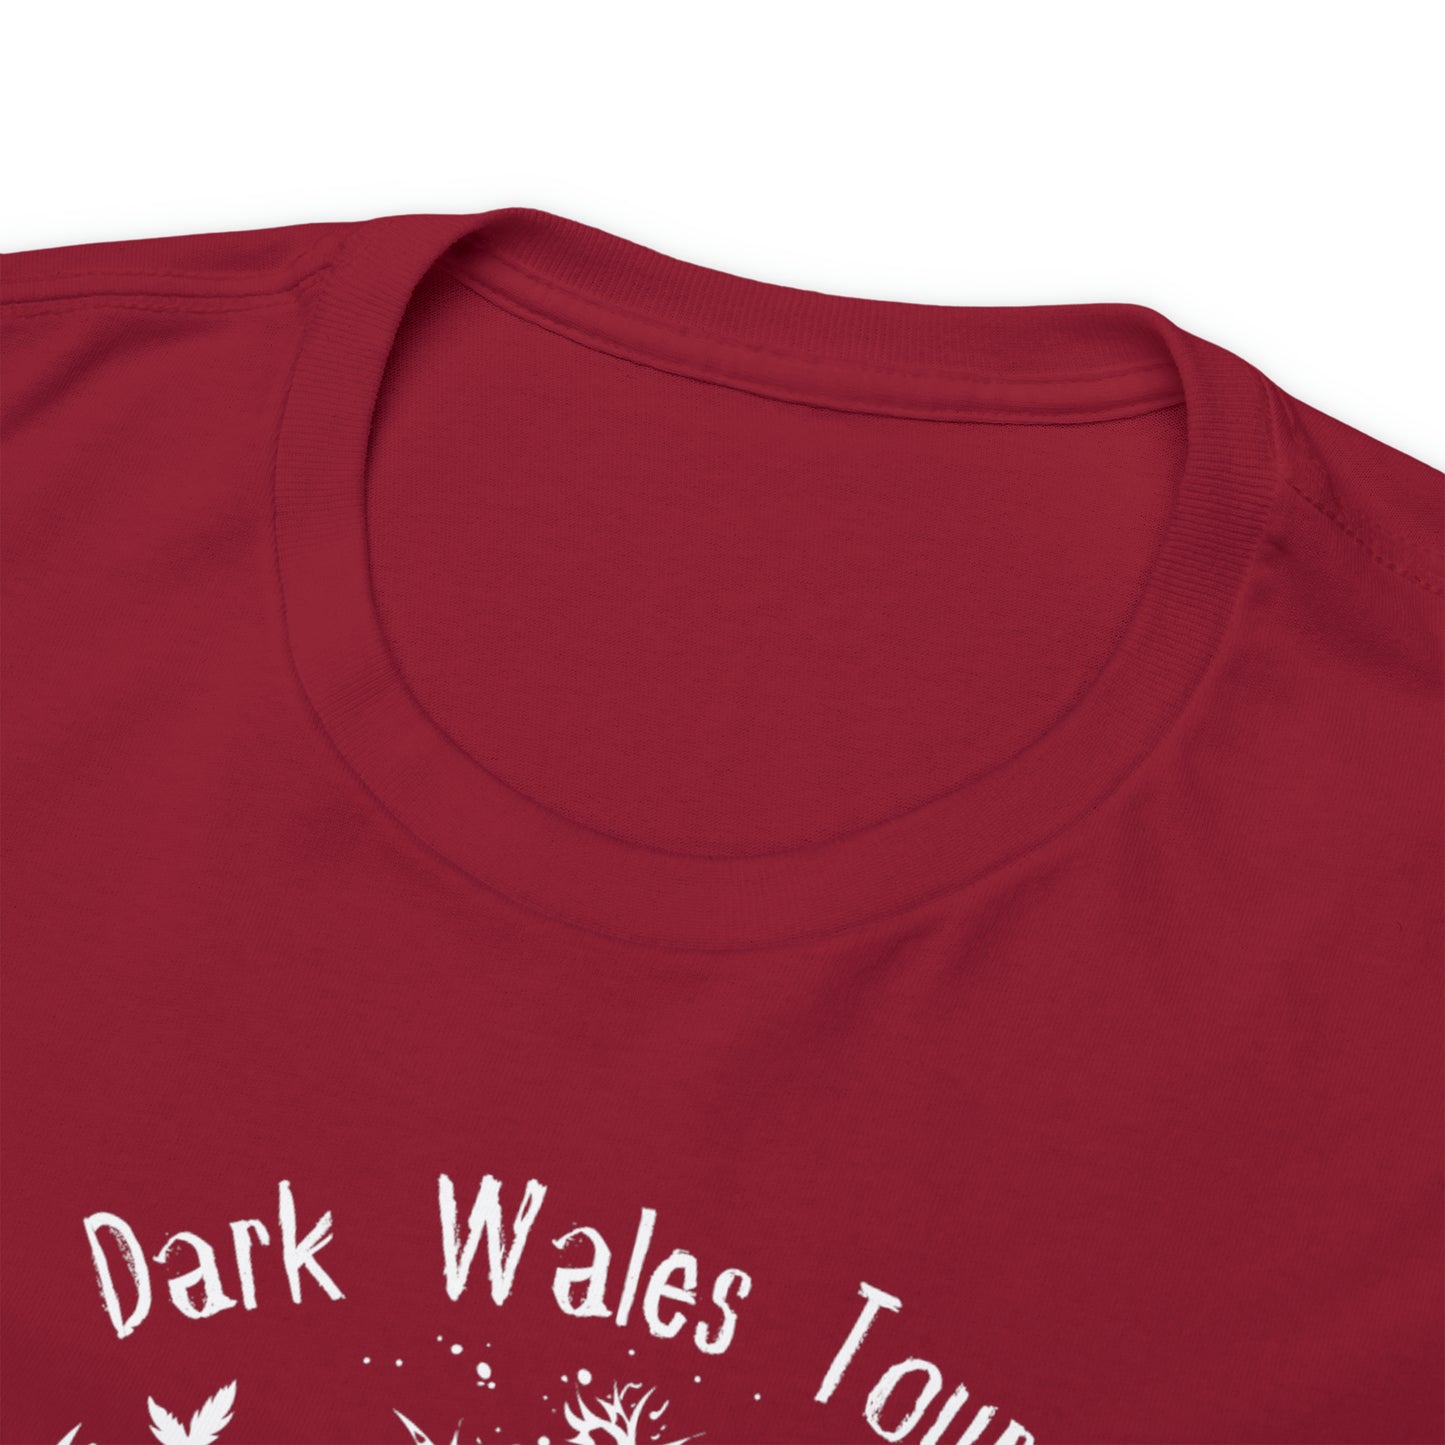 Dark Wales Tours Est. 2019 - White logo